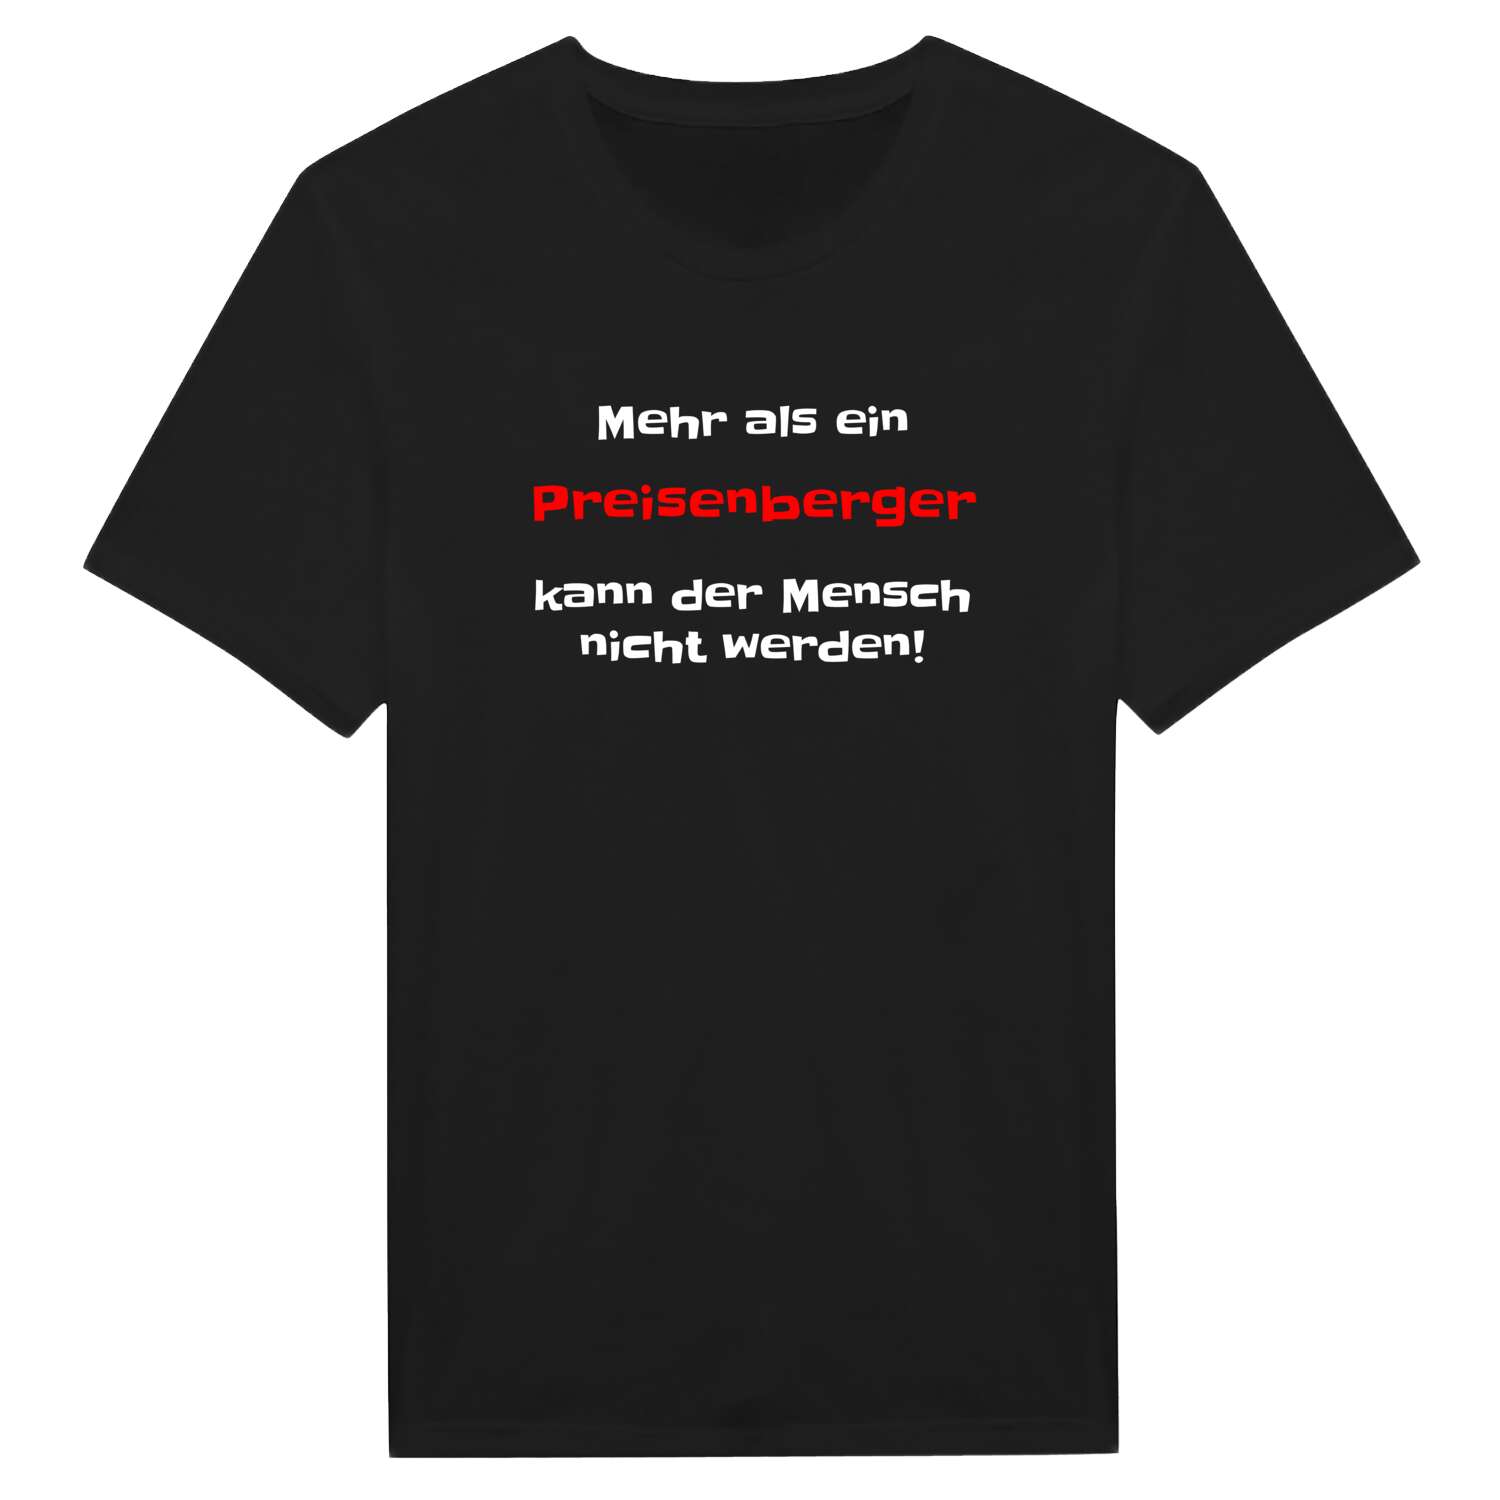 Preisenberg T-Shirt »Mehr als ein«